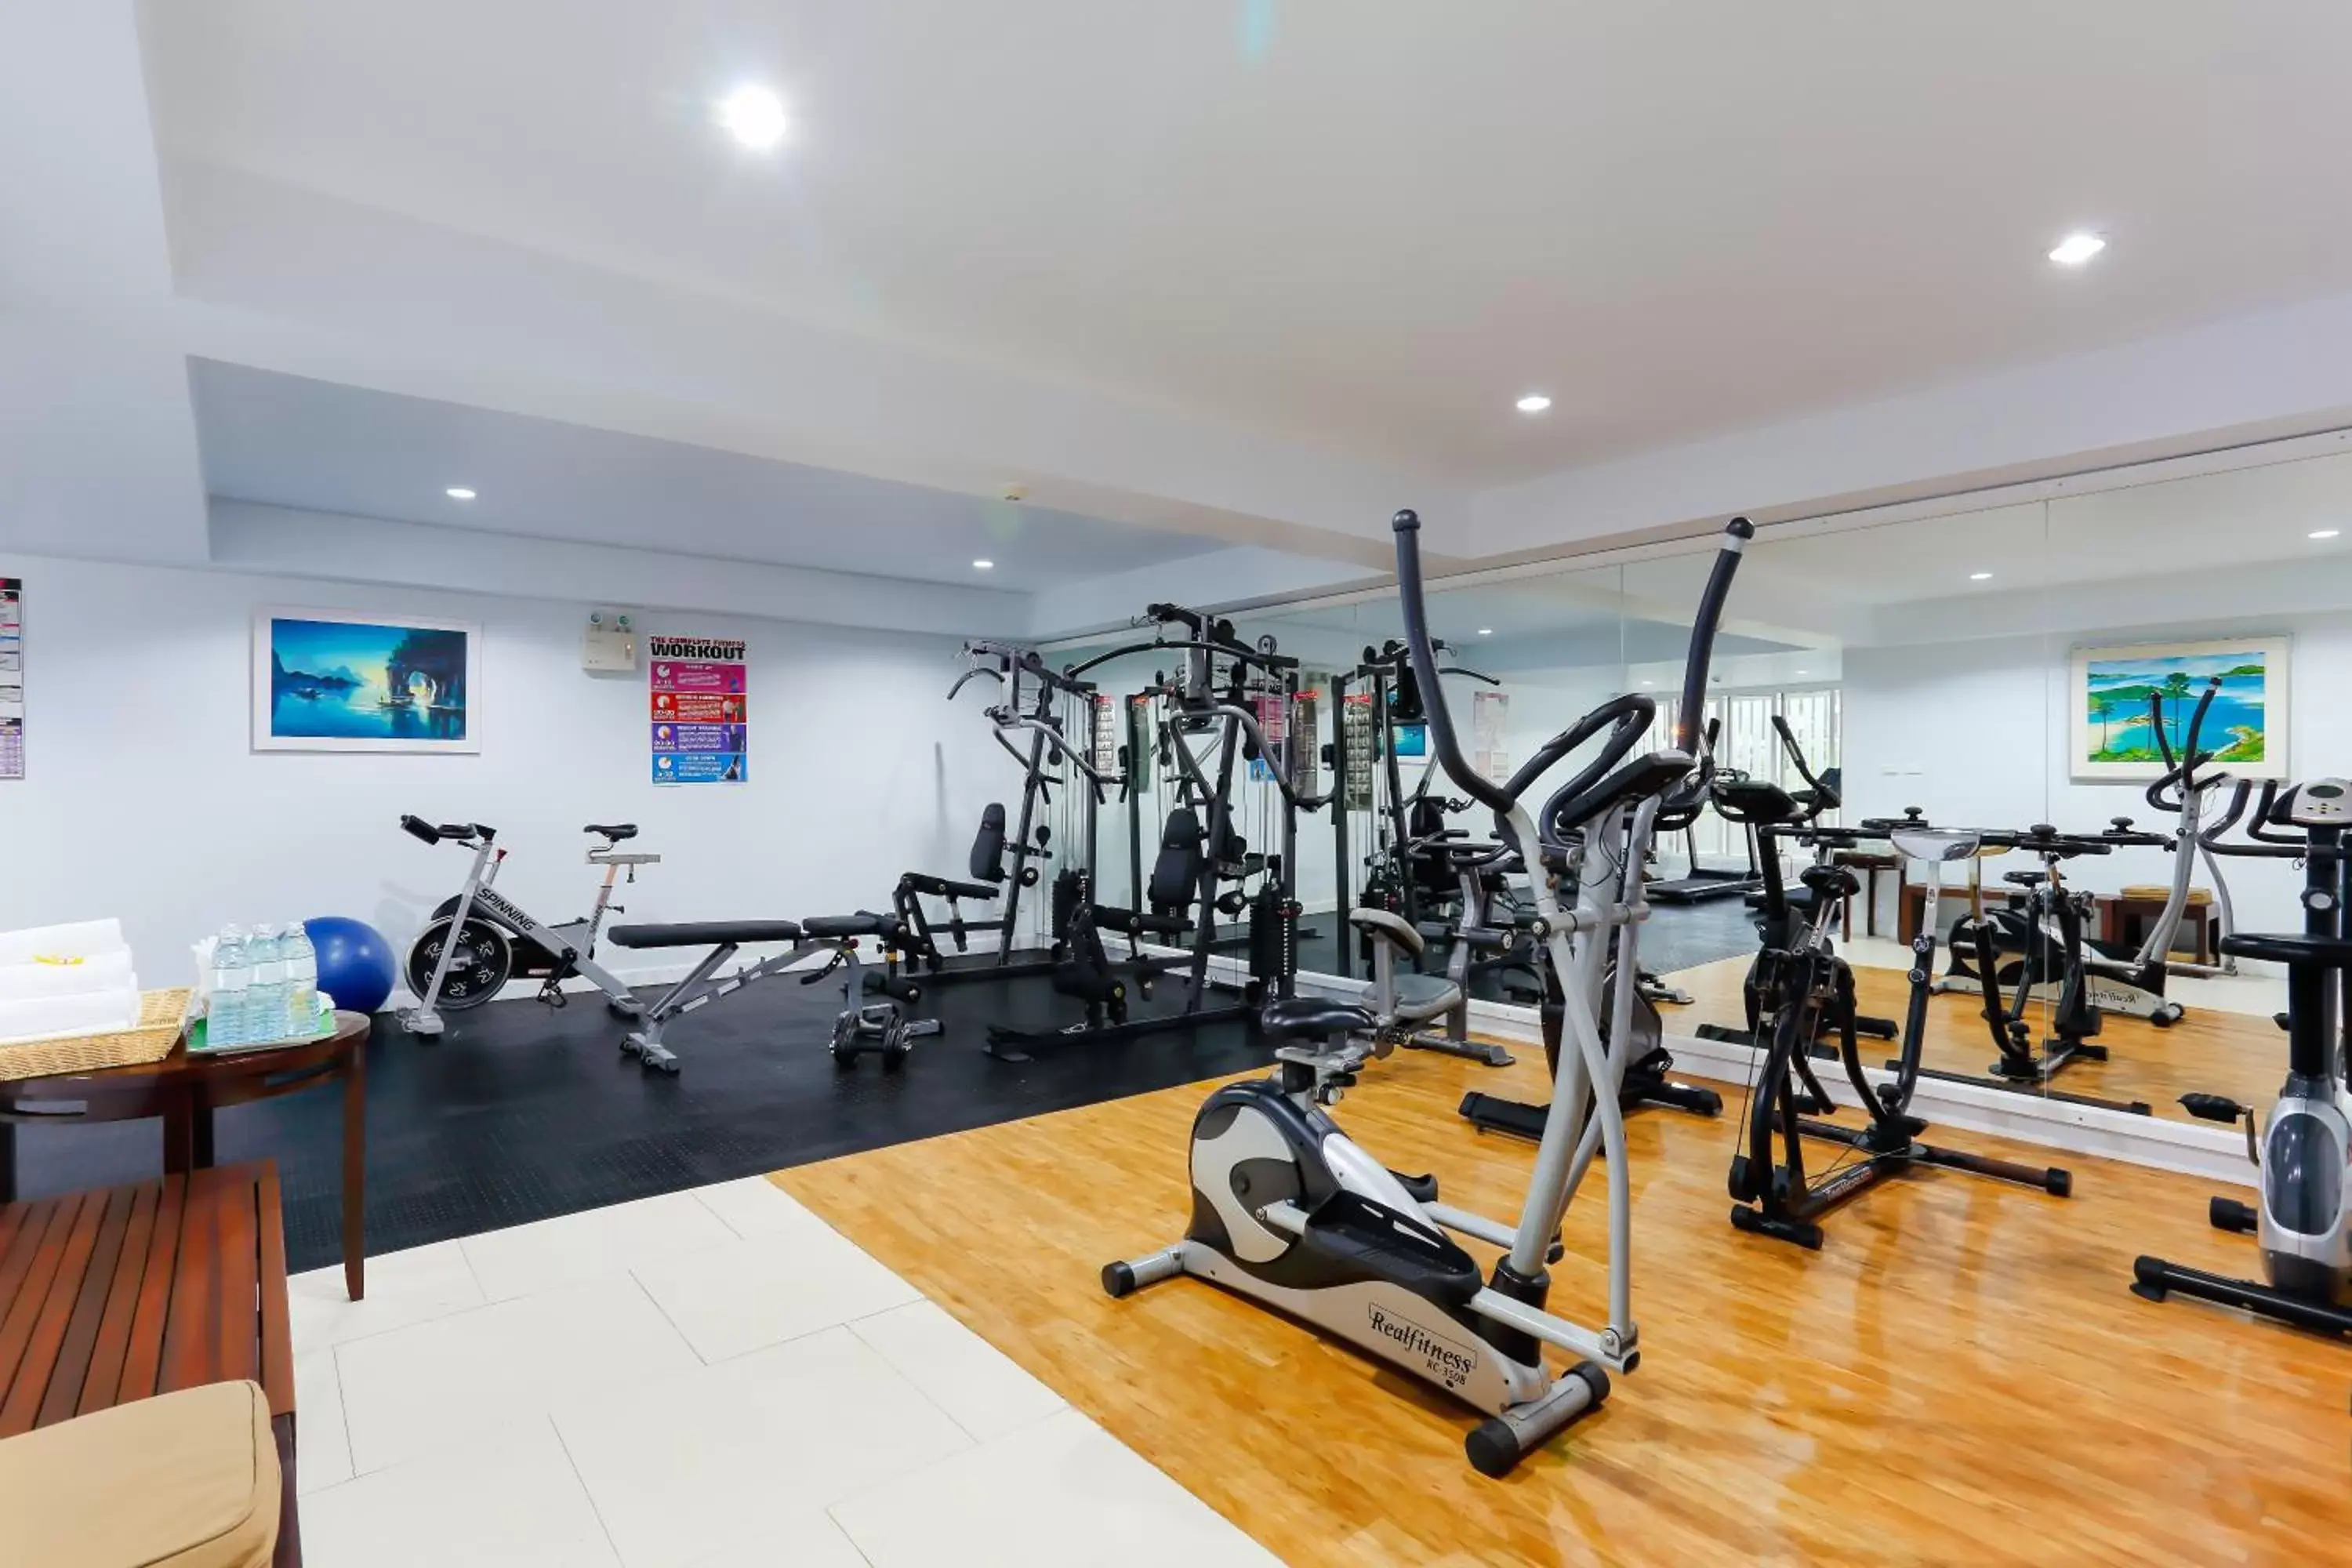 Fitness centre/facilities, Fitness Center/Facilities in The Briza Beach Resort, Khao Lak SHA Extra Plus